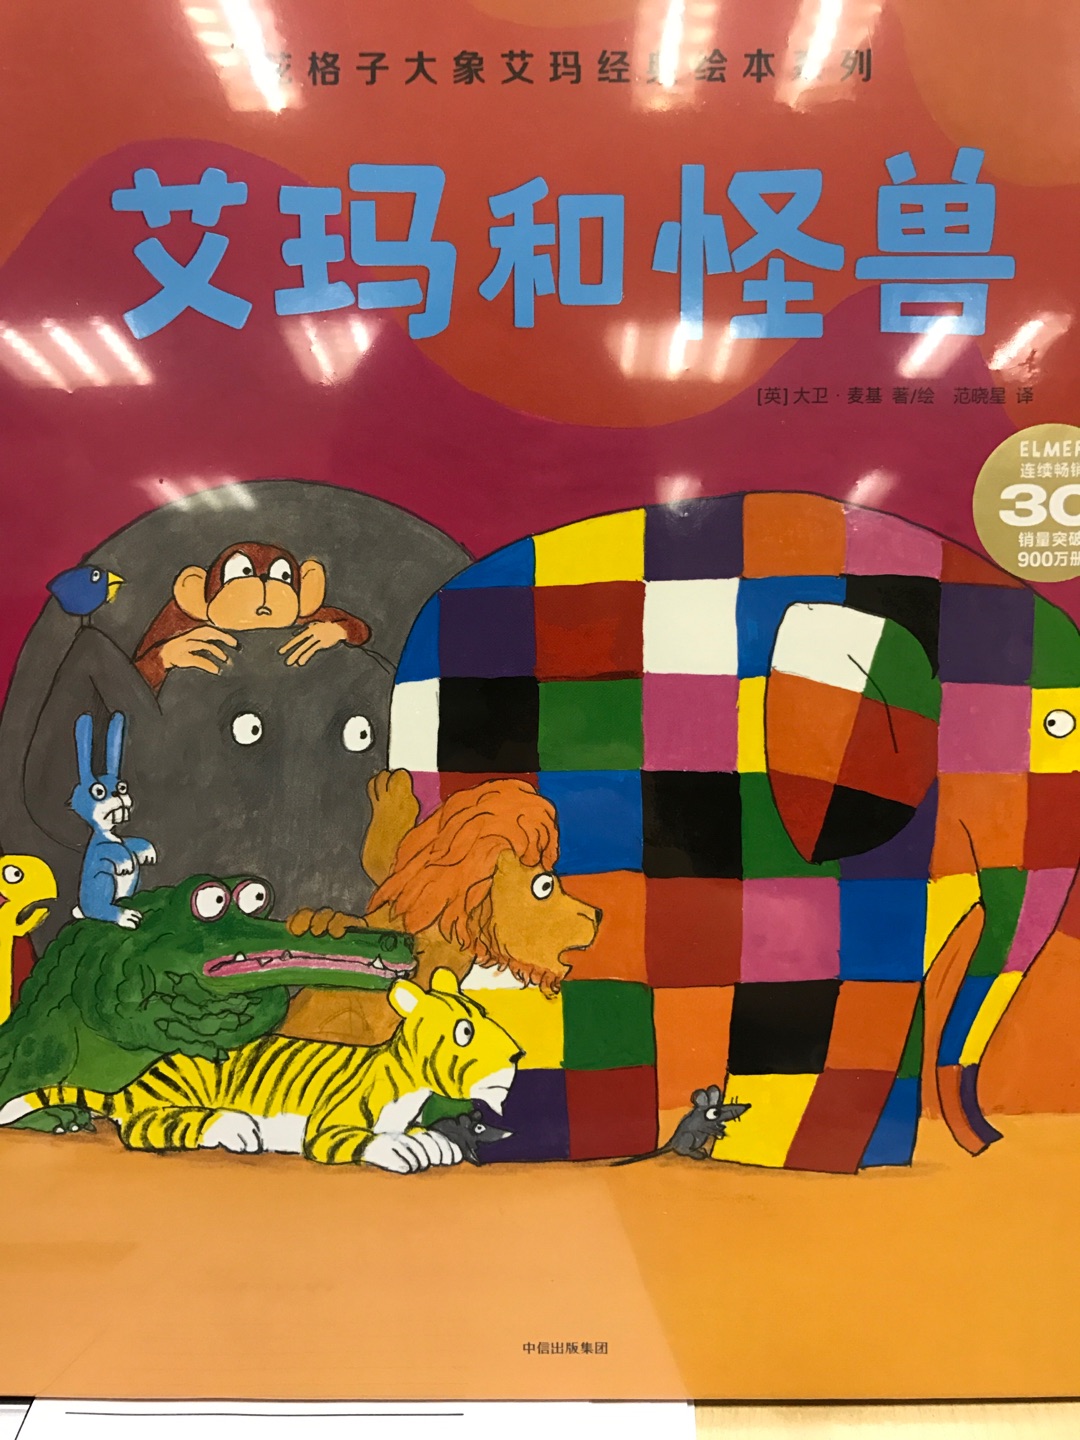 花格子大象系列是经典，一直想入手，有活动赶紧买了，准备最近拿给儿子读起来！